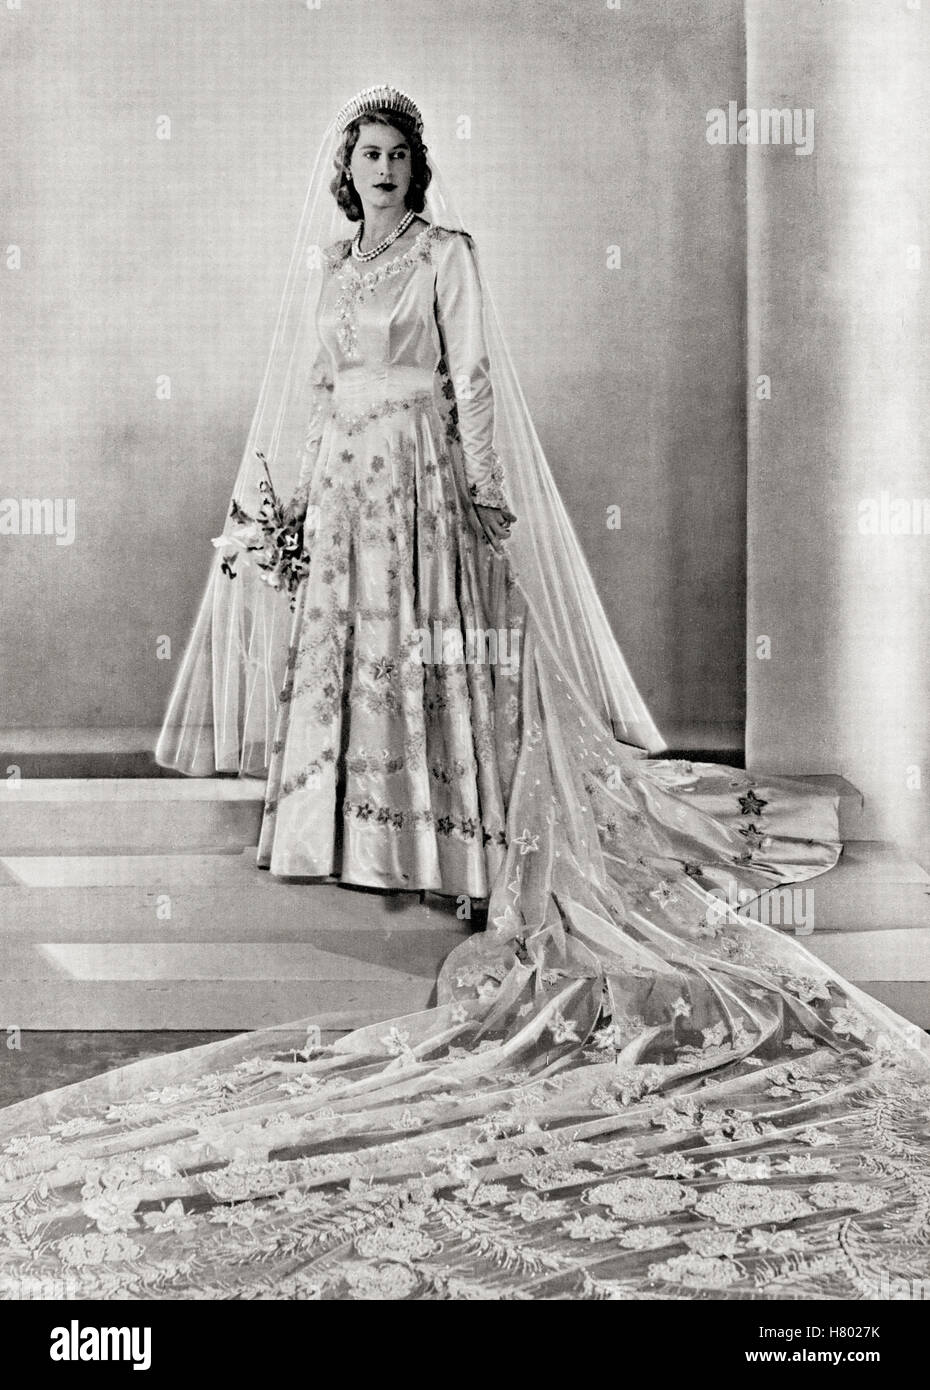 Princesse Elizabeth, future reine Elizabeth II, 1926 - 2022, vue ici le jour de son mariage. D'une photographie prise en 1947. Banque D'Images